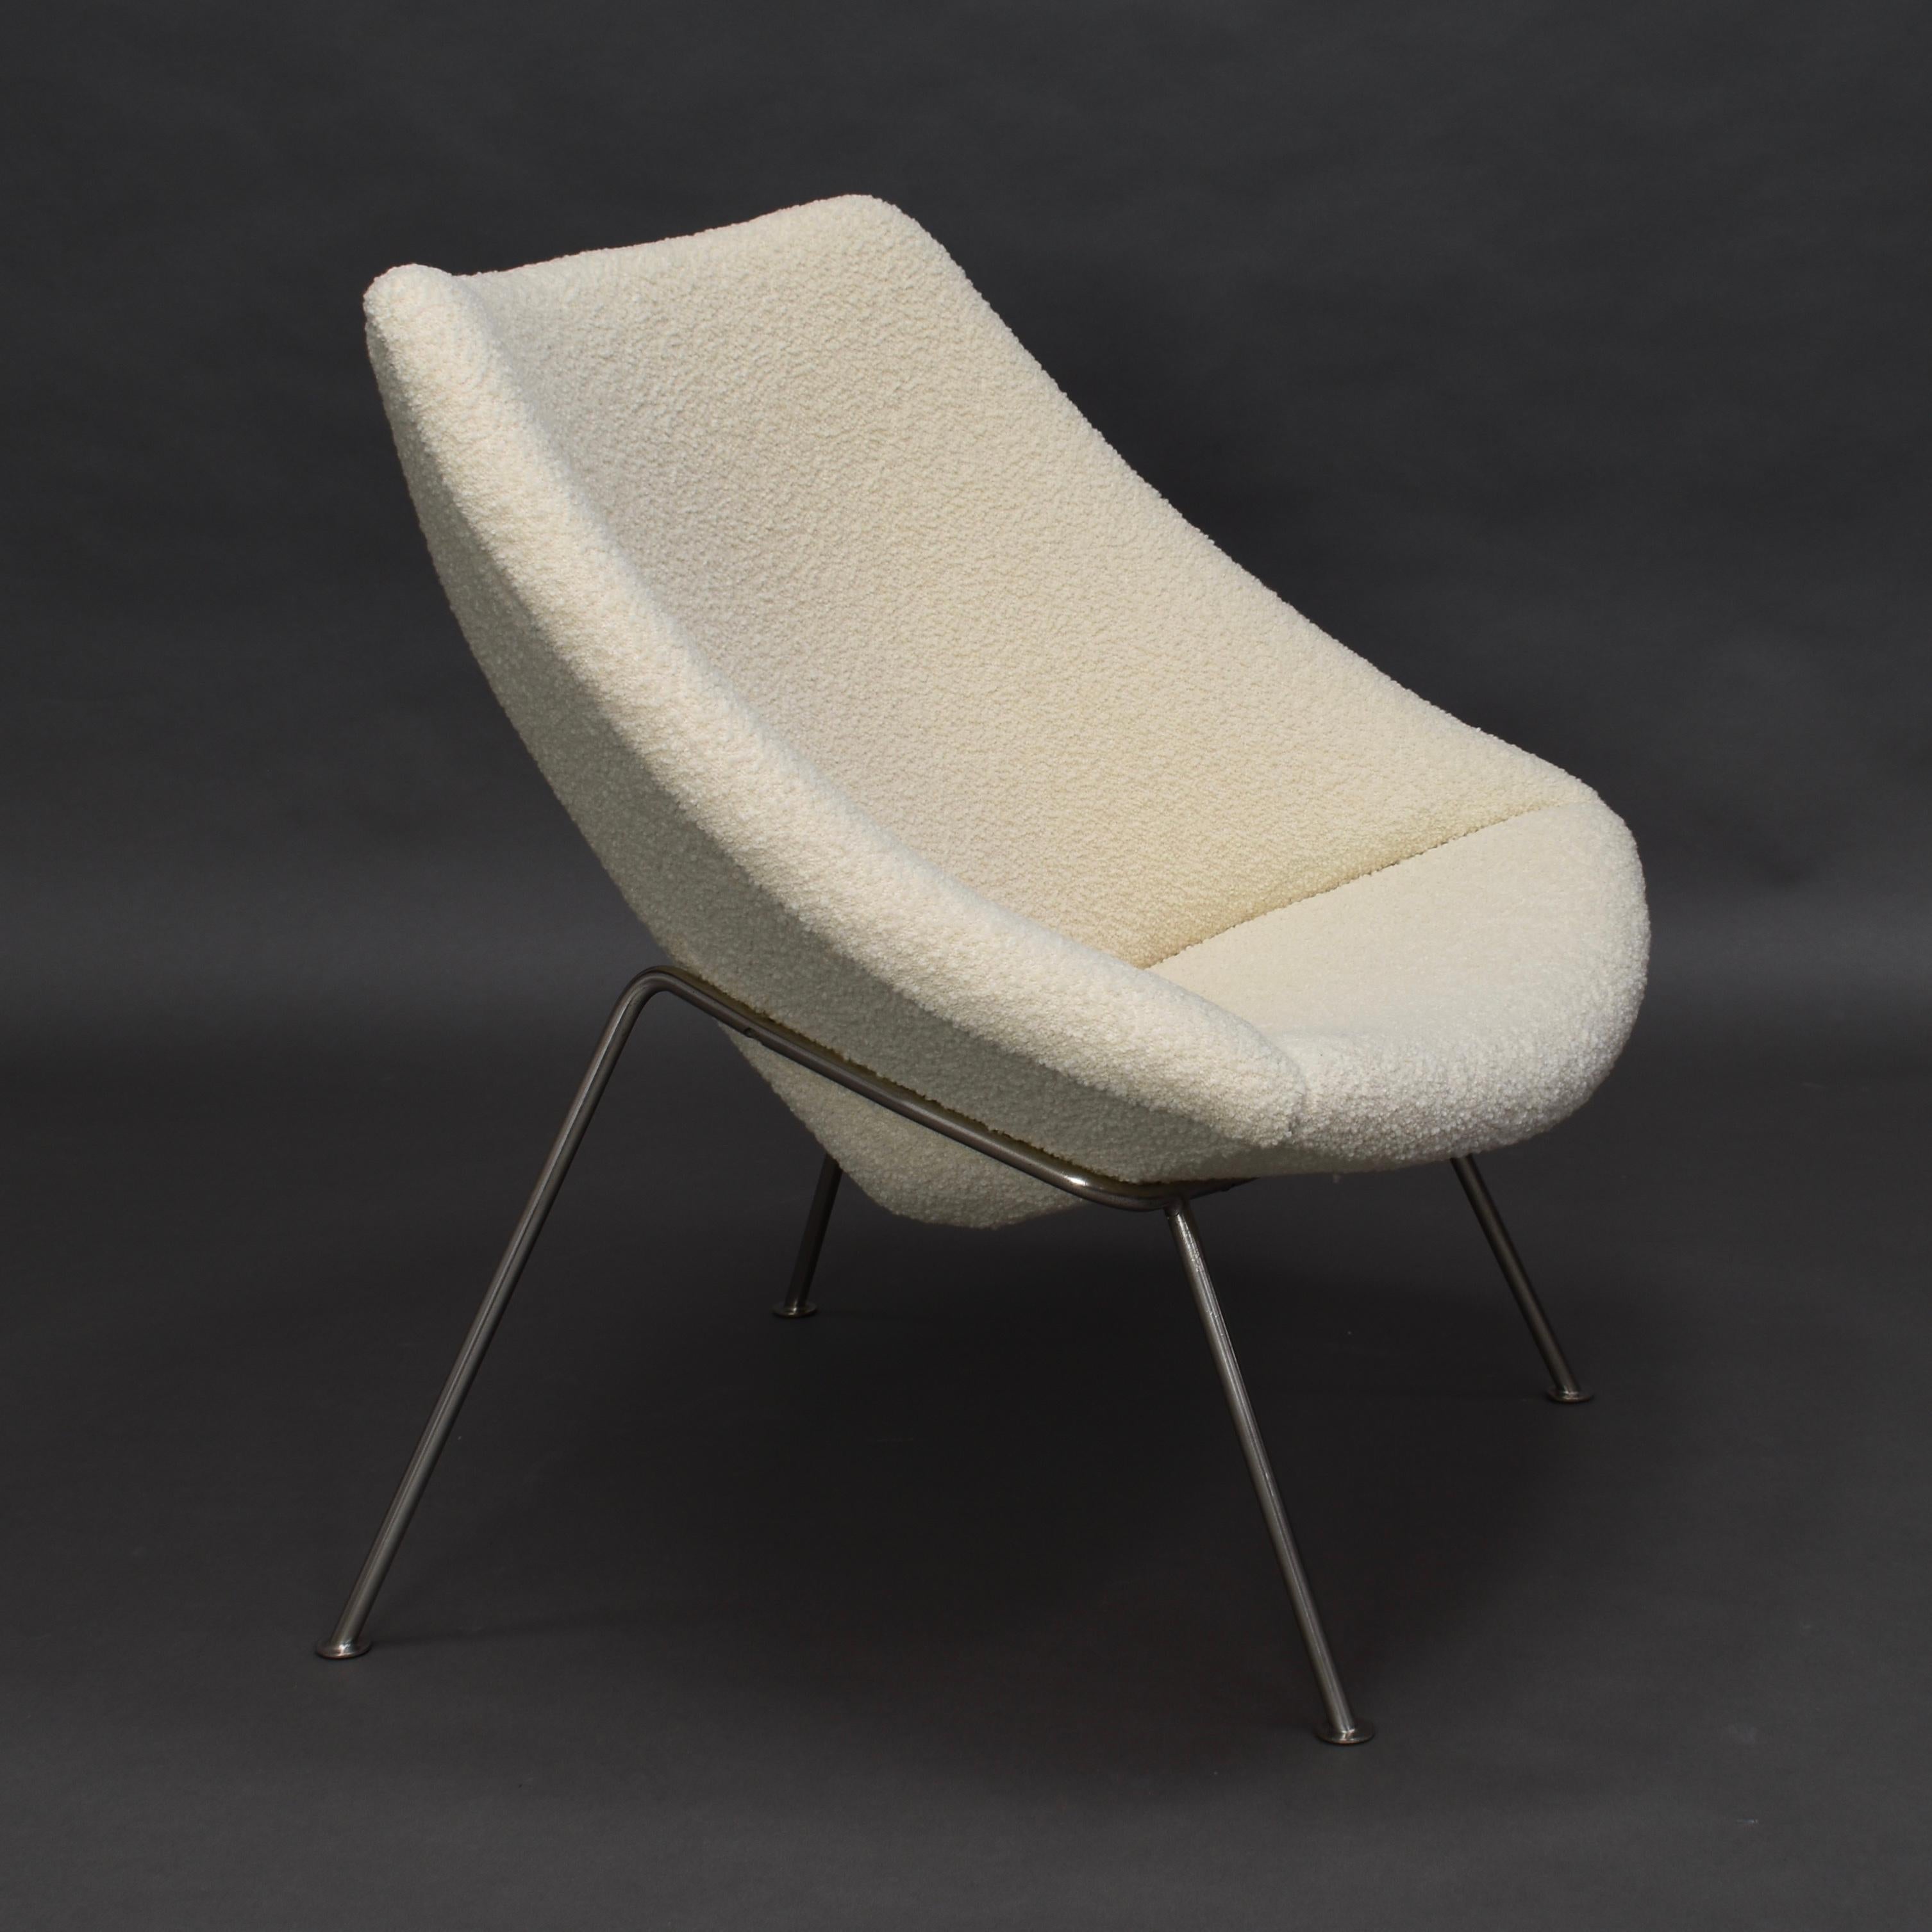 Frühe 1. Auflage des Sessels 'Oyster' F157 von Pierre Paulin für ARTIFORT - 1965.

Die frühen Metallsockel waren aus gebürstetem Edelstahl gefertigt. Die neuen, modernen Modelle sind aus verchromtem Metall gefertigt.

Der Stuhl wurde mit einem